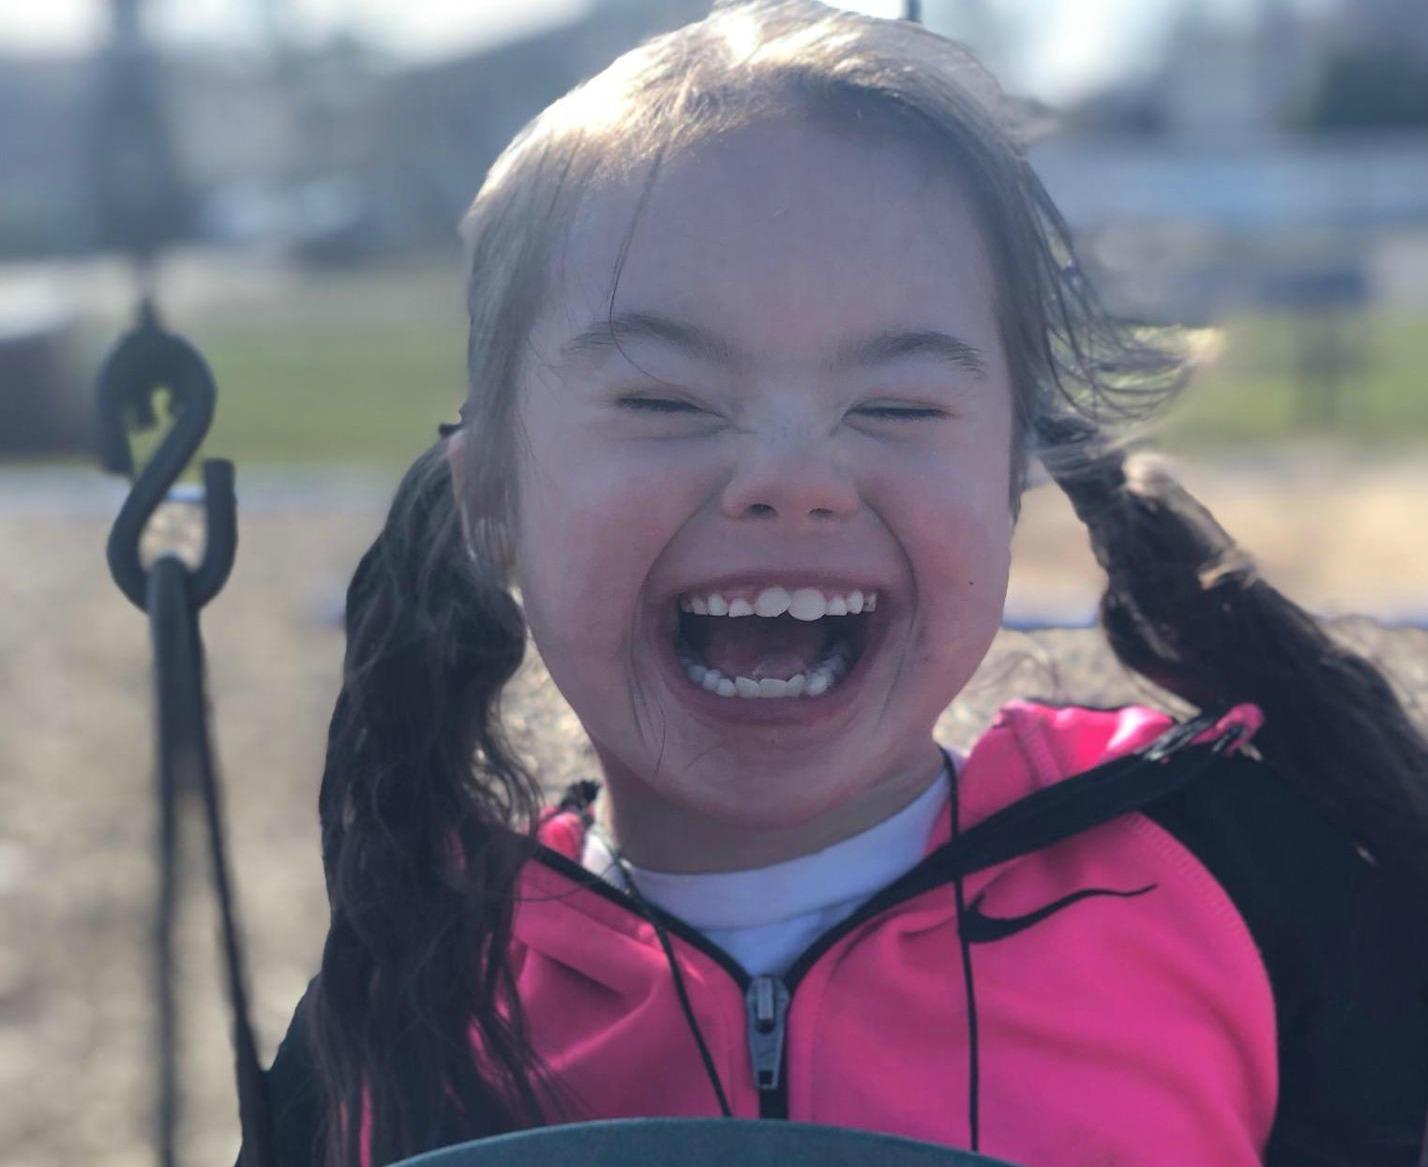 Little girl smiling on swing